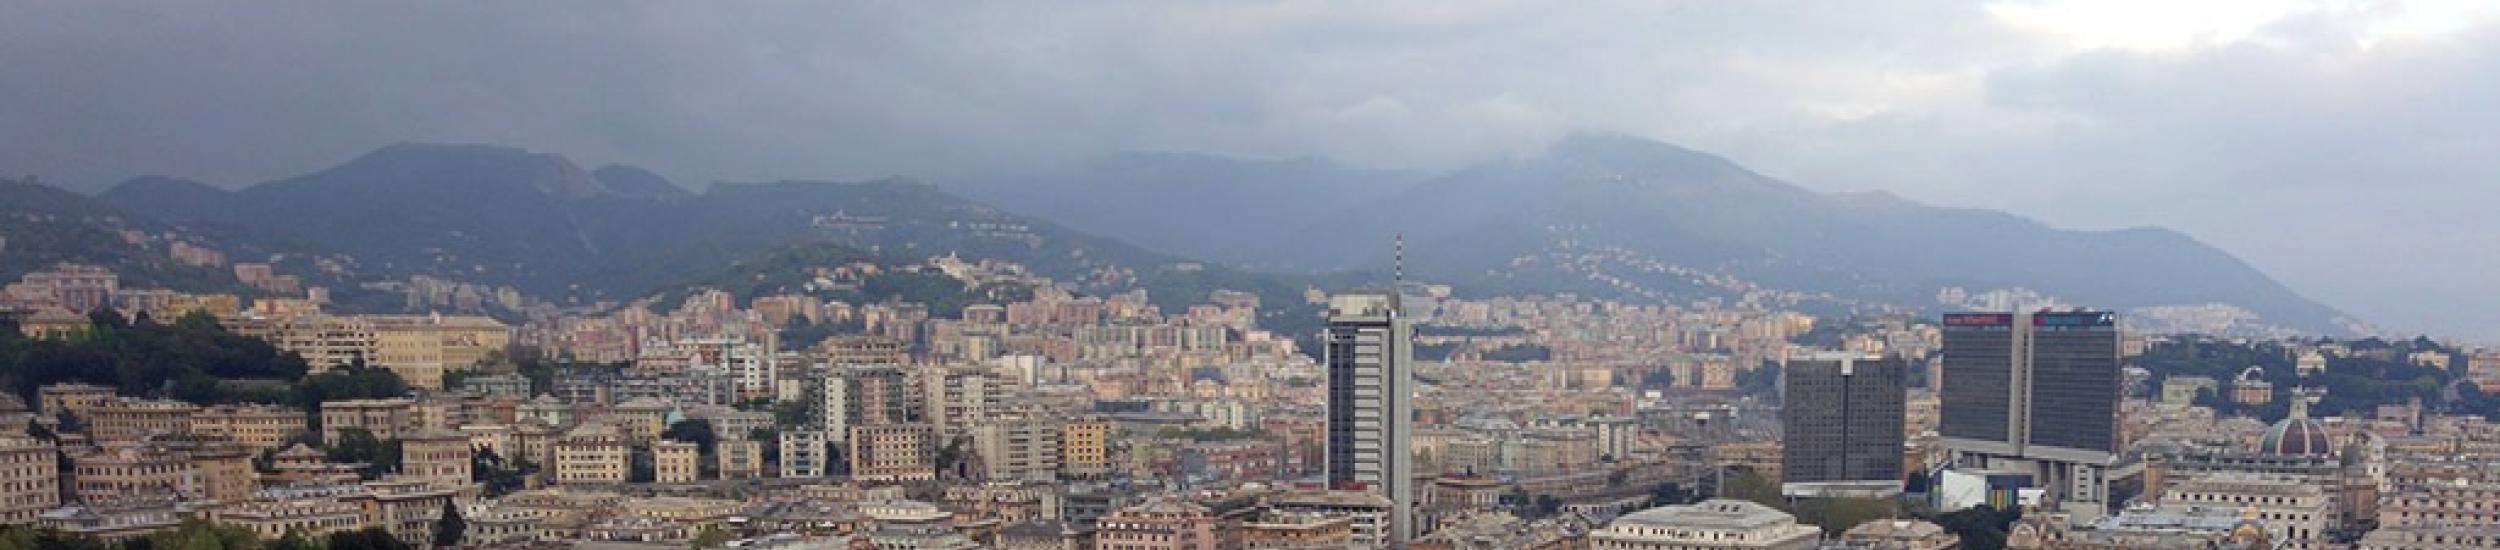 Aria, l’ozono è tornato nei limiti ieri nella città metropolitana di genova (news del 2016-05-30 09:42:48)